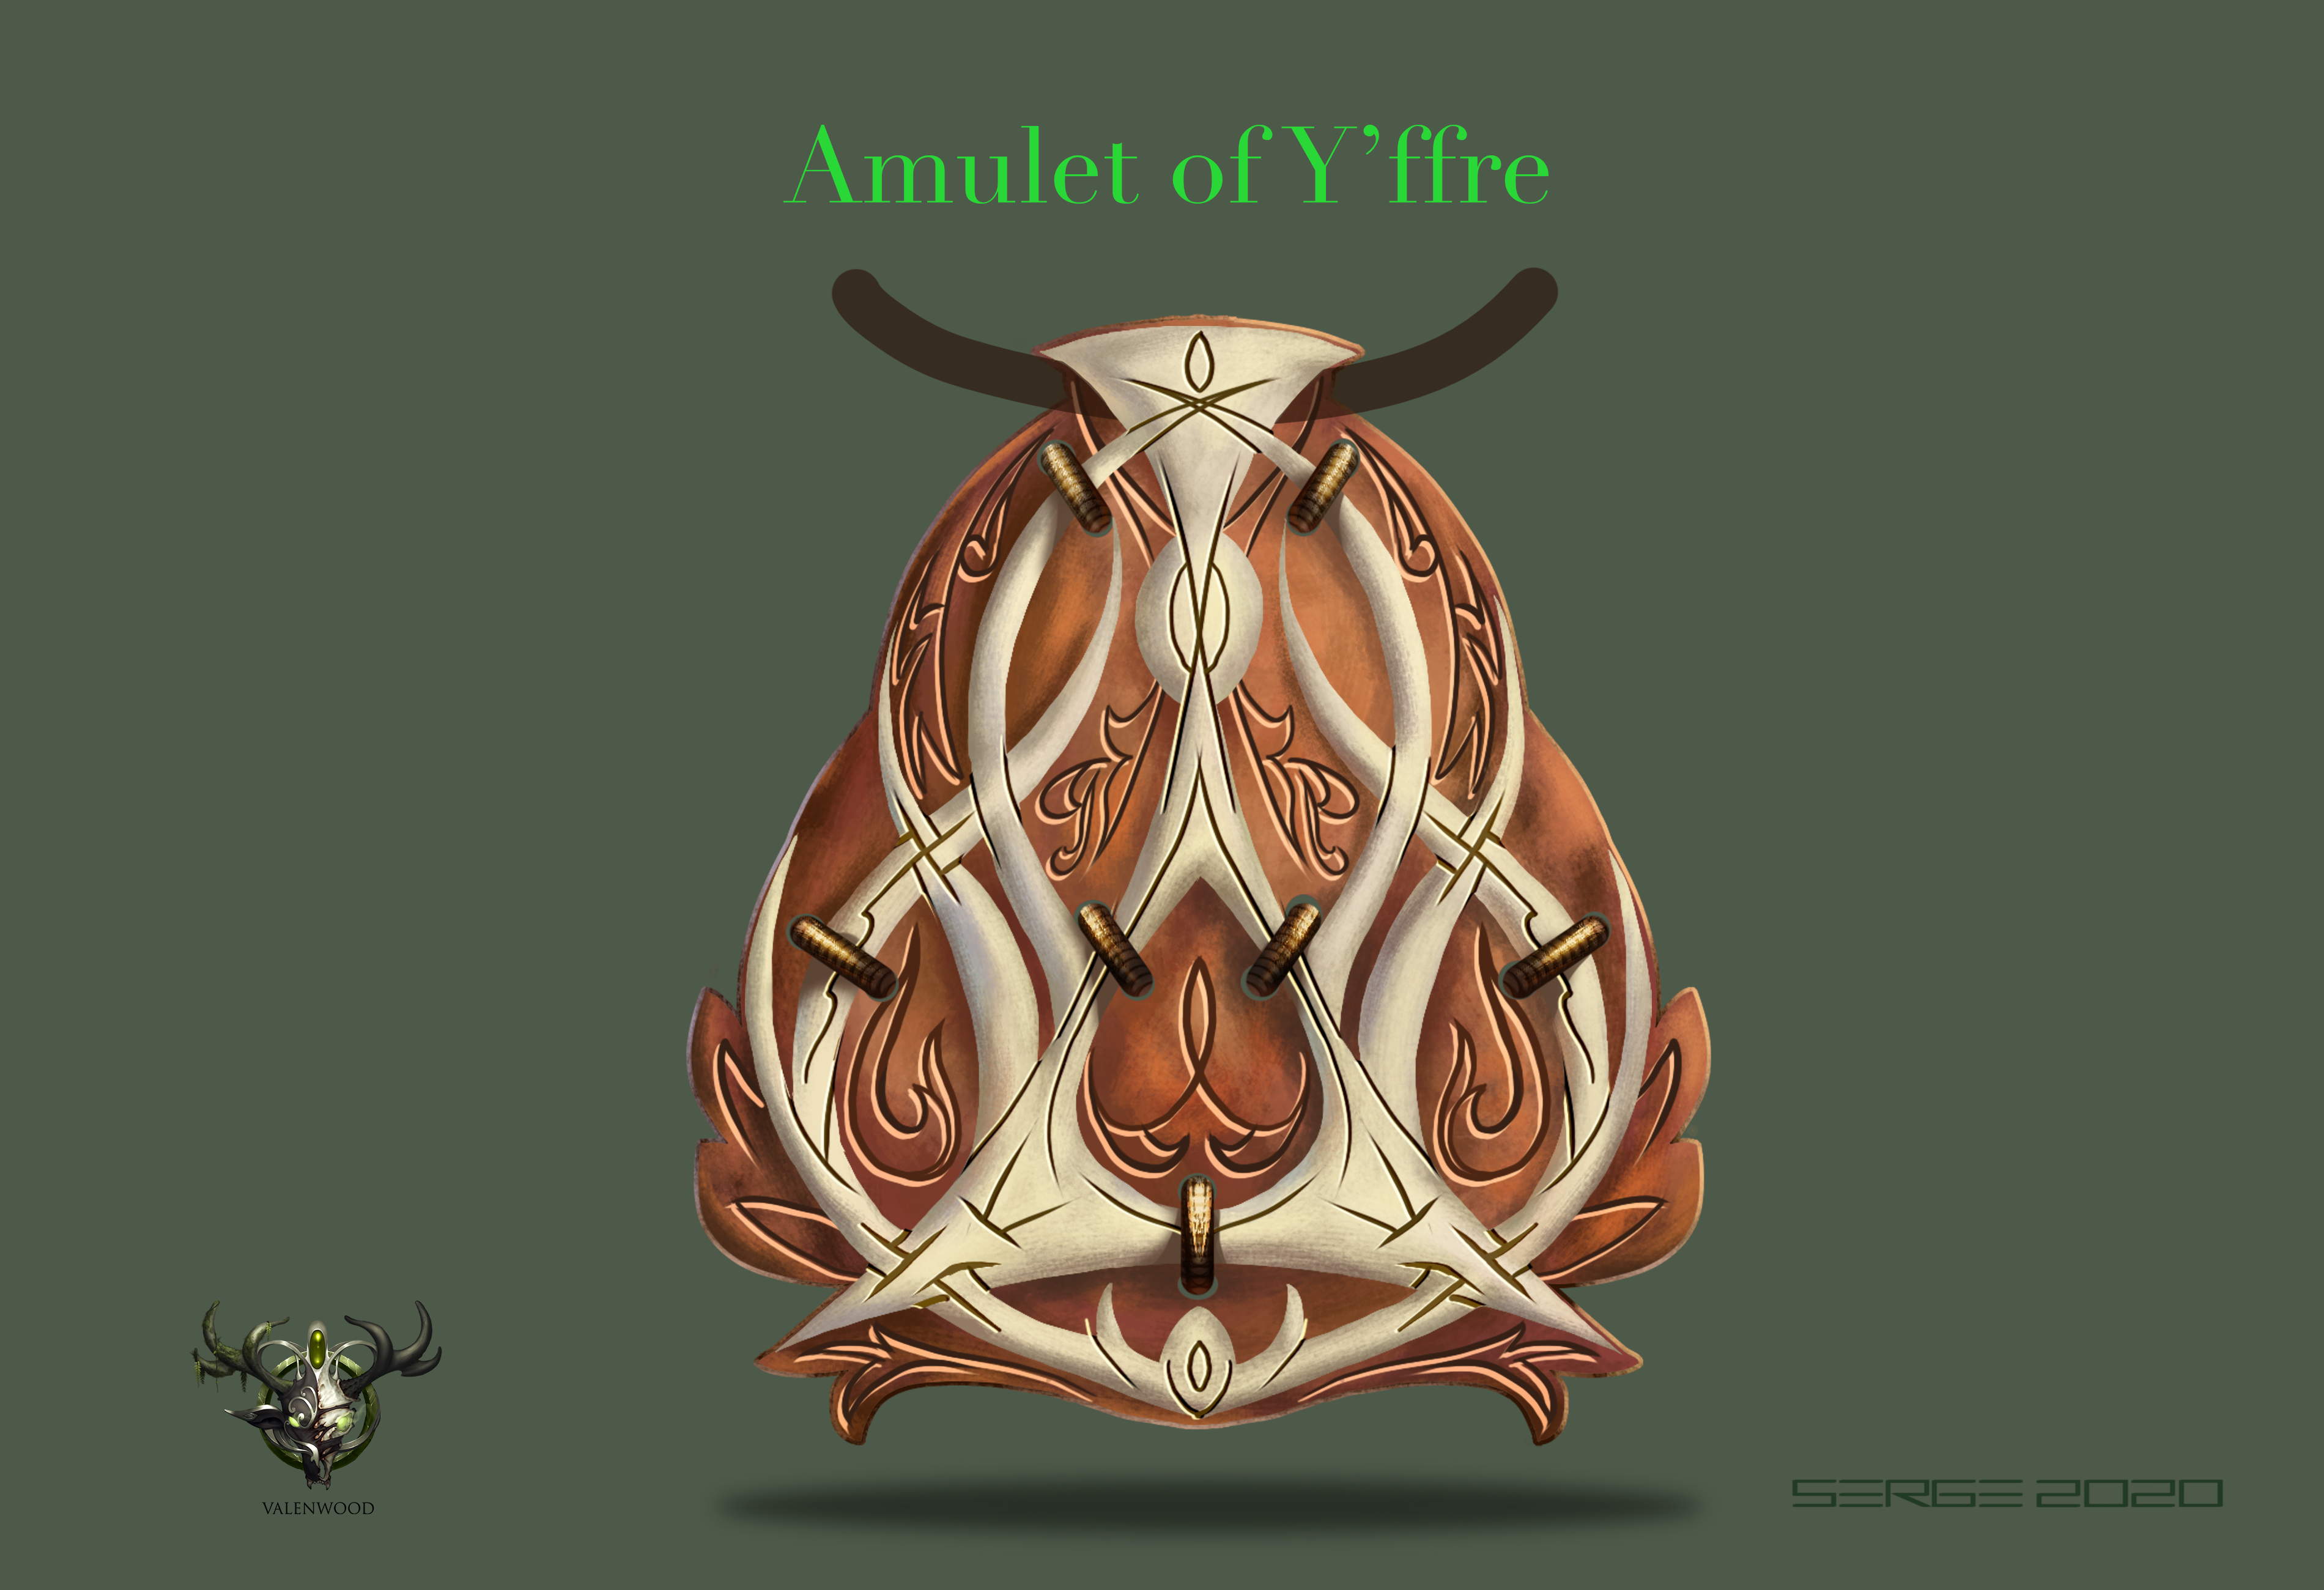 Amulet of Yffre